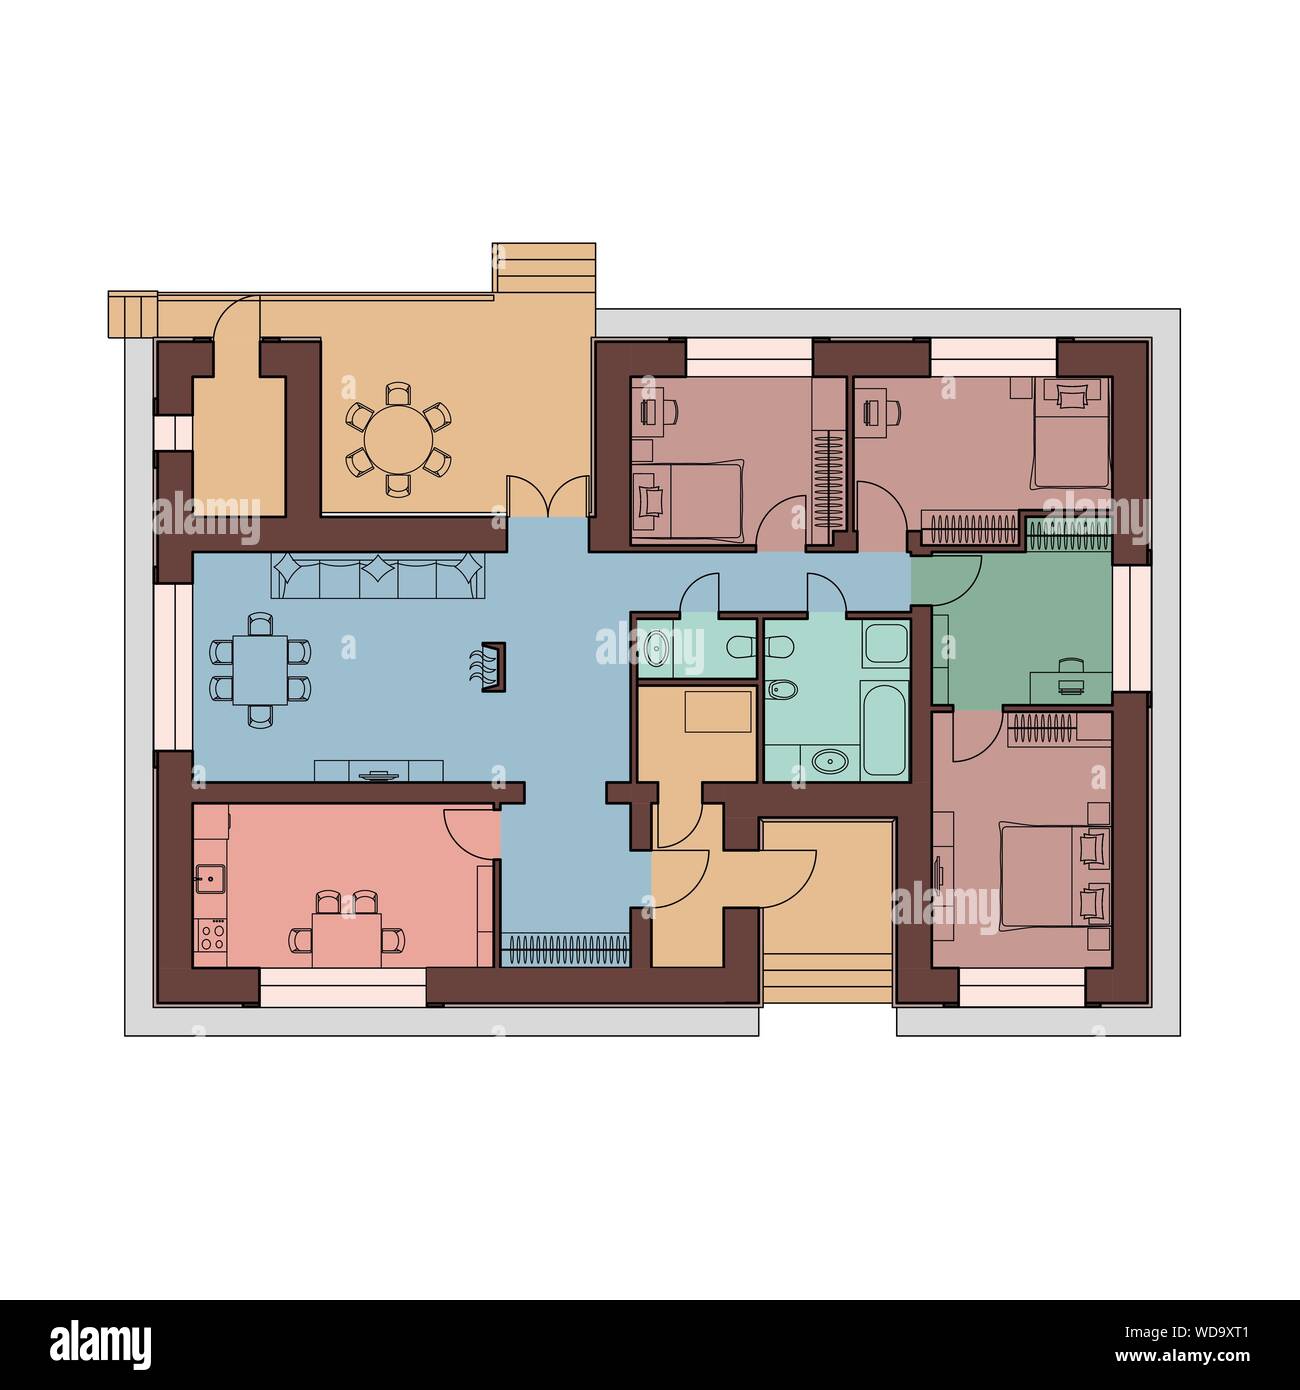 Progetto architettonico di una casa. Vista da sopra con mobili. Le camere cottage sono dipinte in modo diverso. Illustrazione Vettoriale. EPS10 Illustrazione Vettoriale